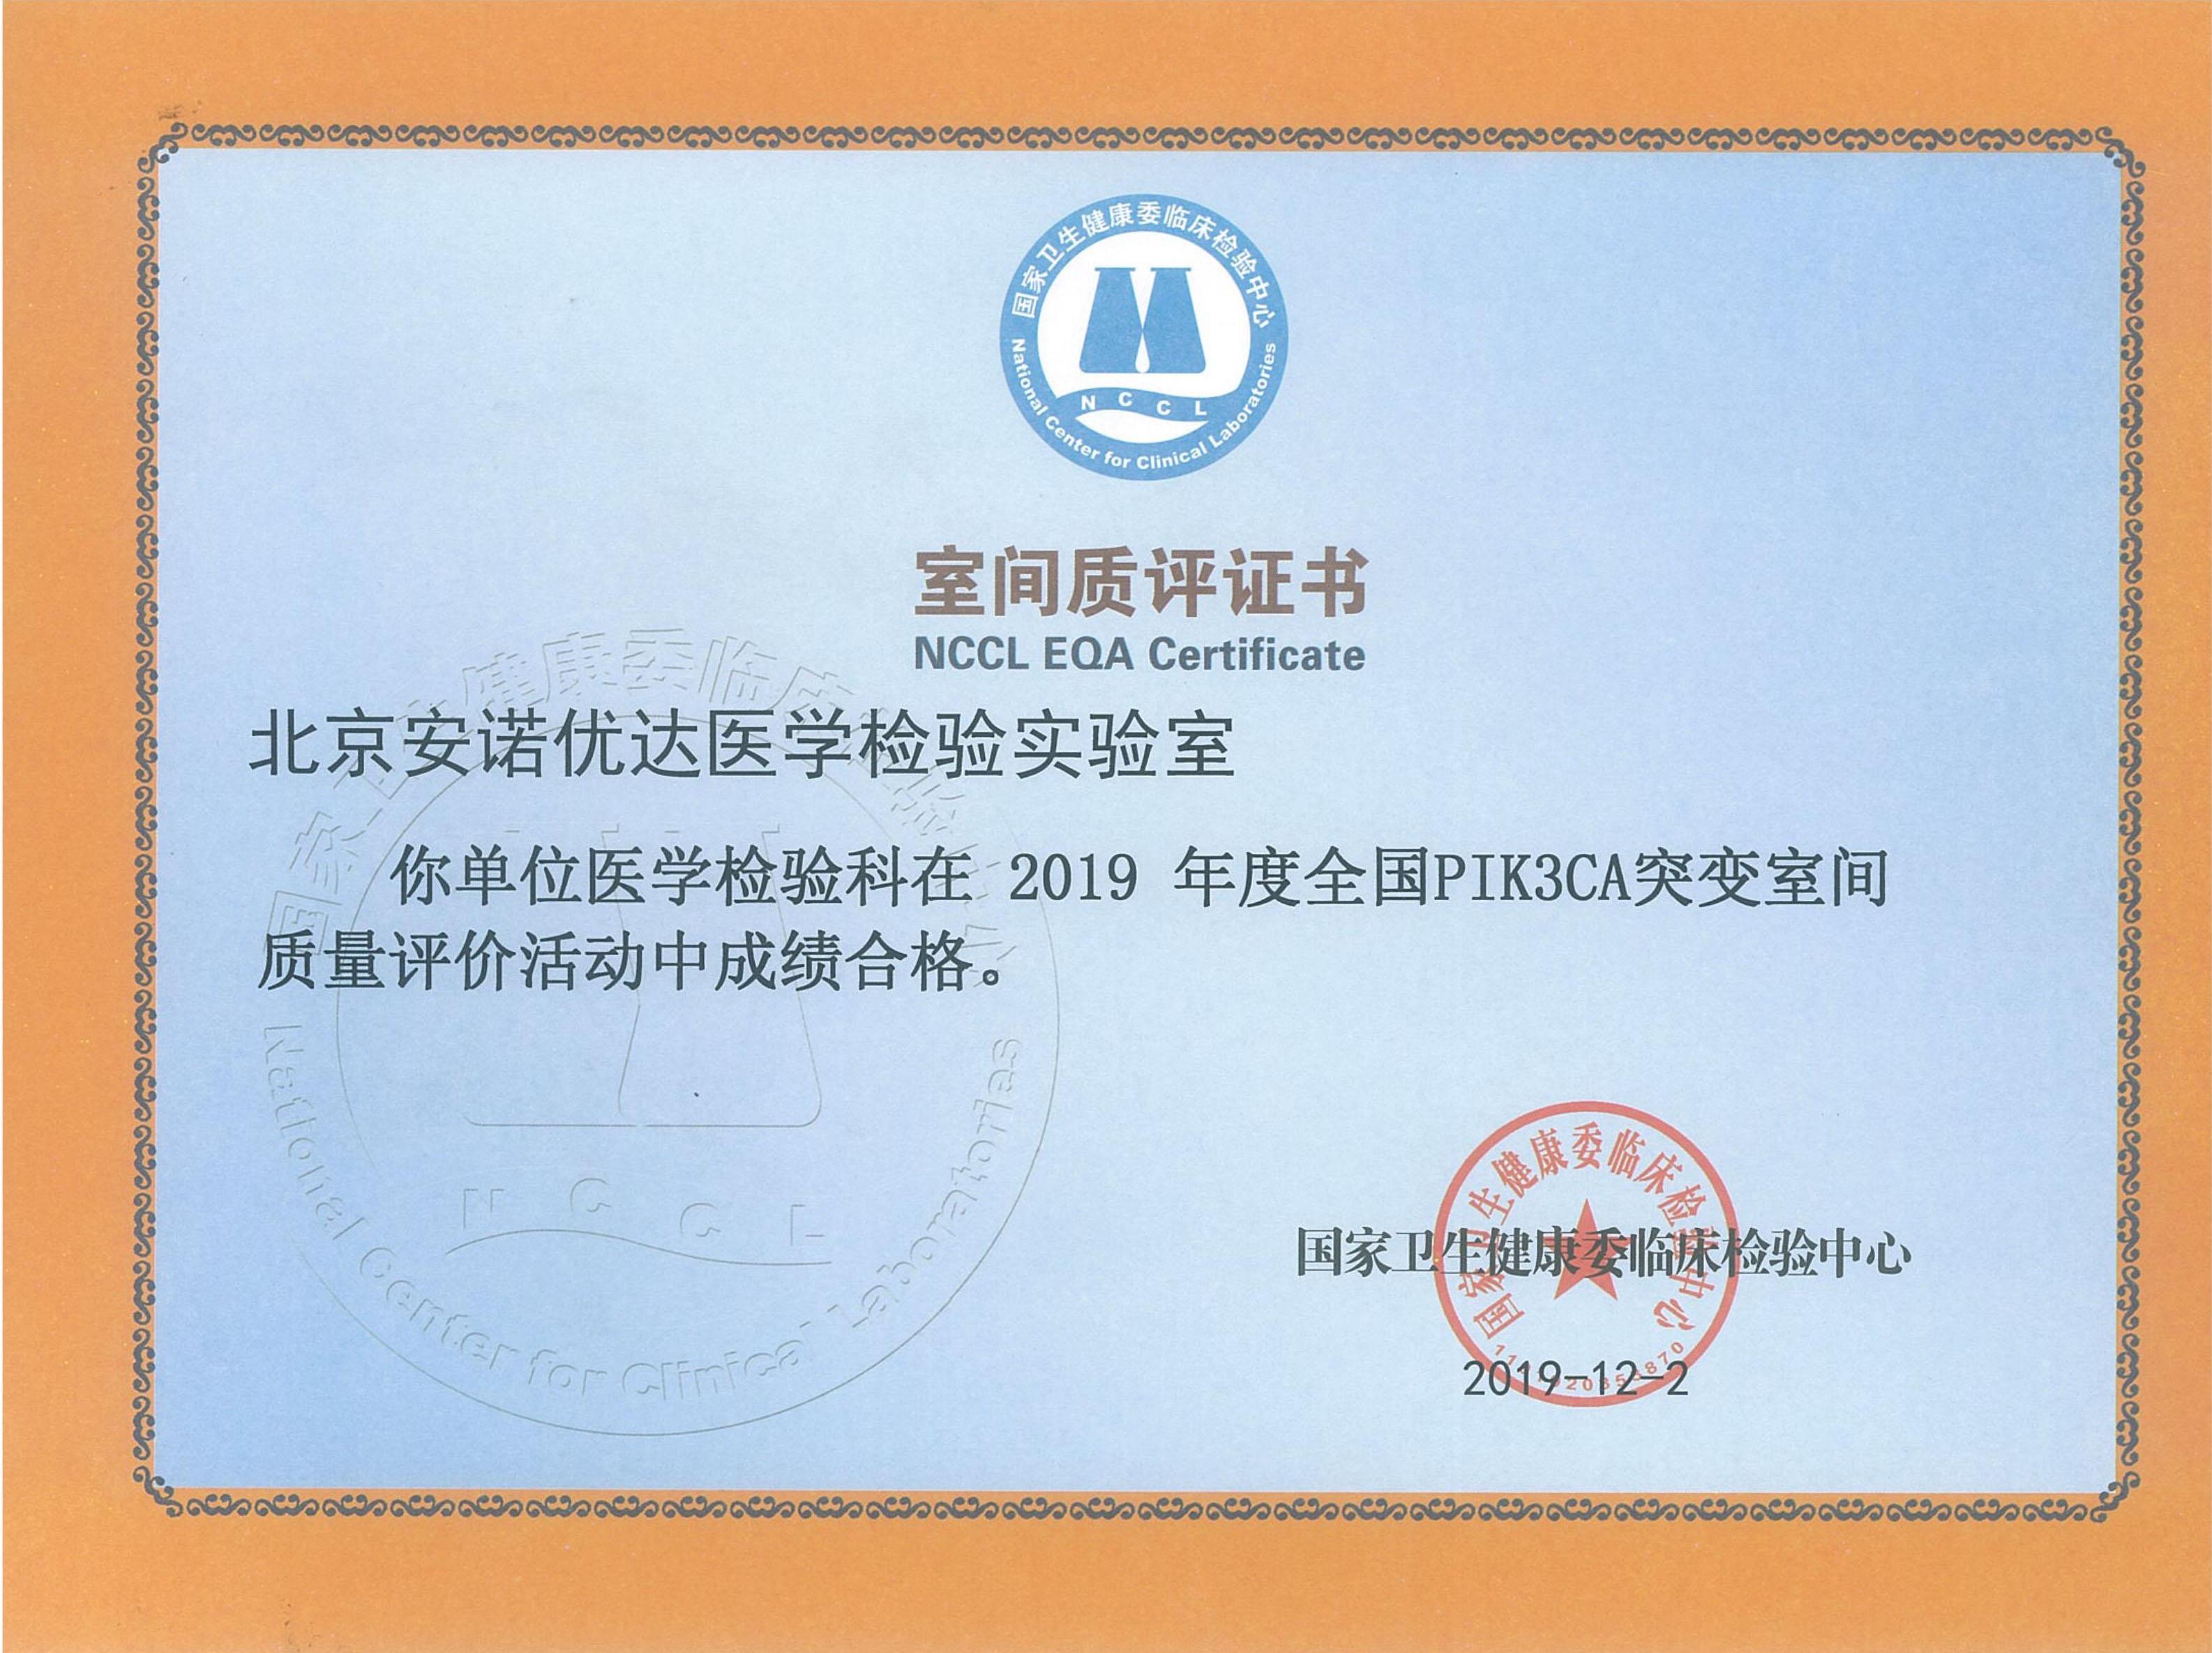 NCCL EQA Certificate of PIK3CA Mutation (2019)